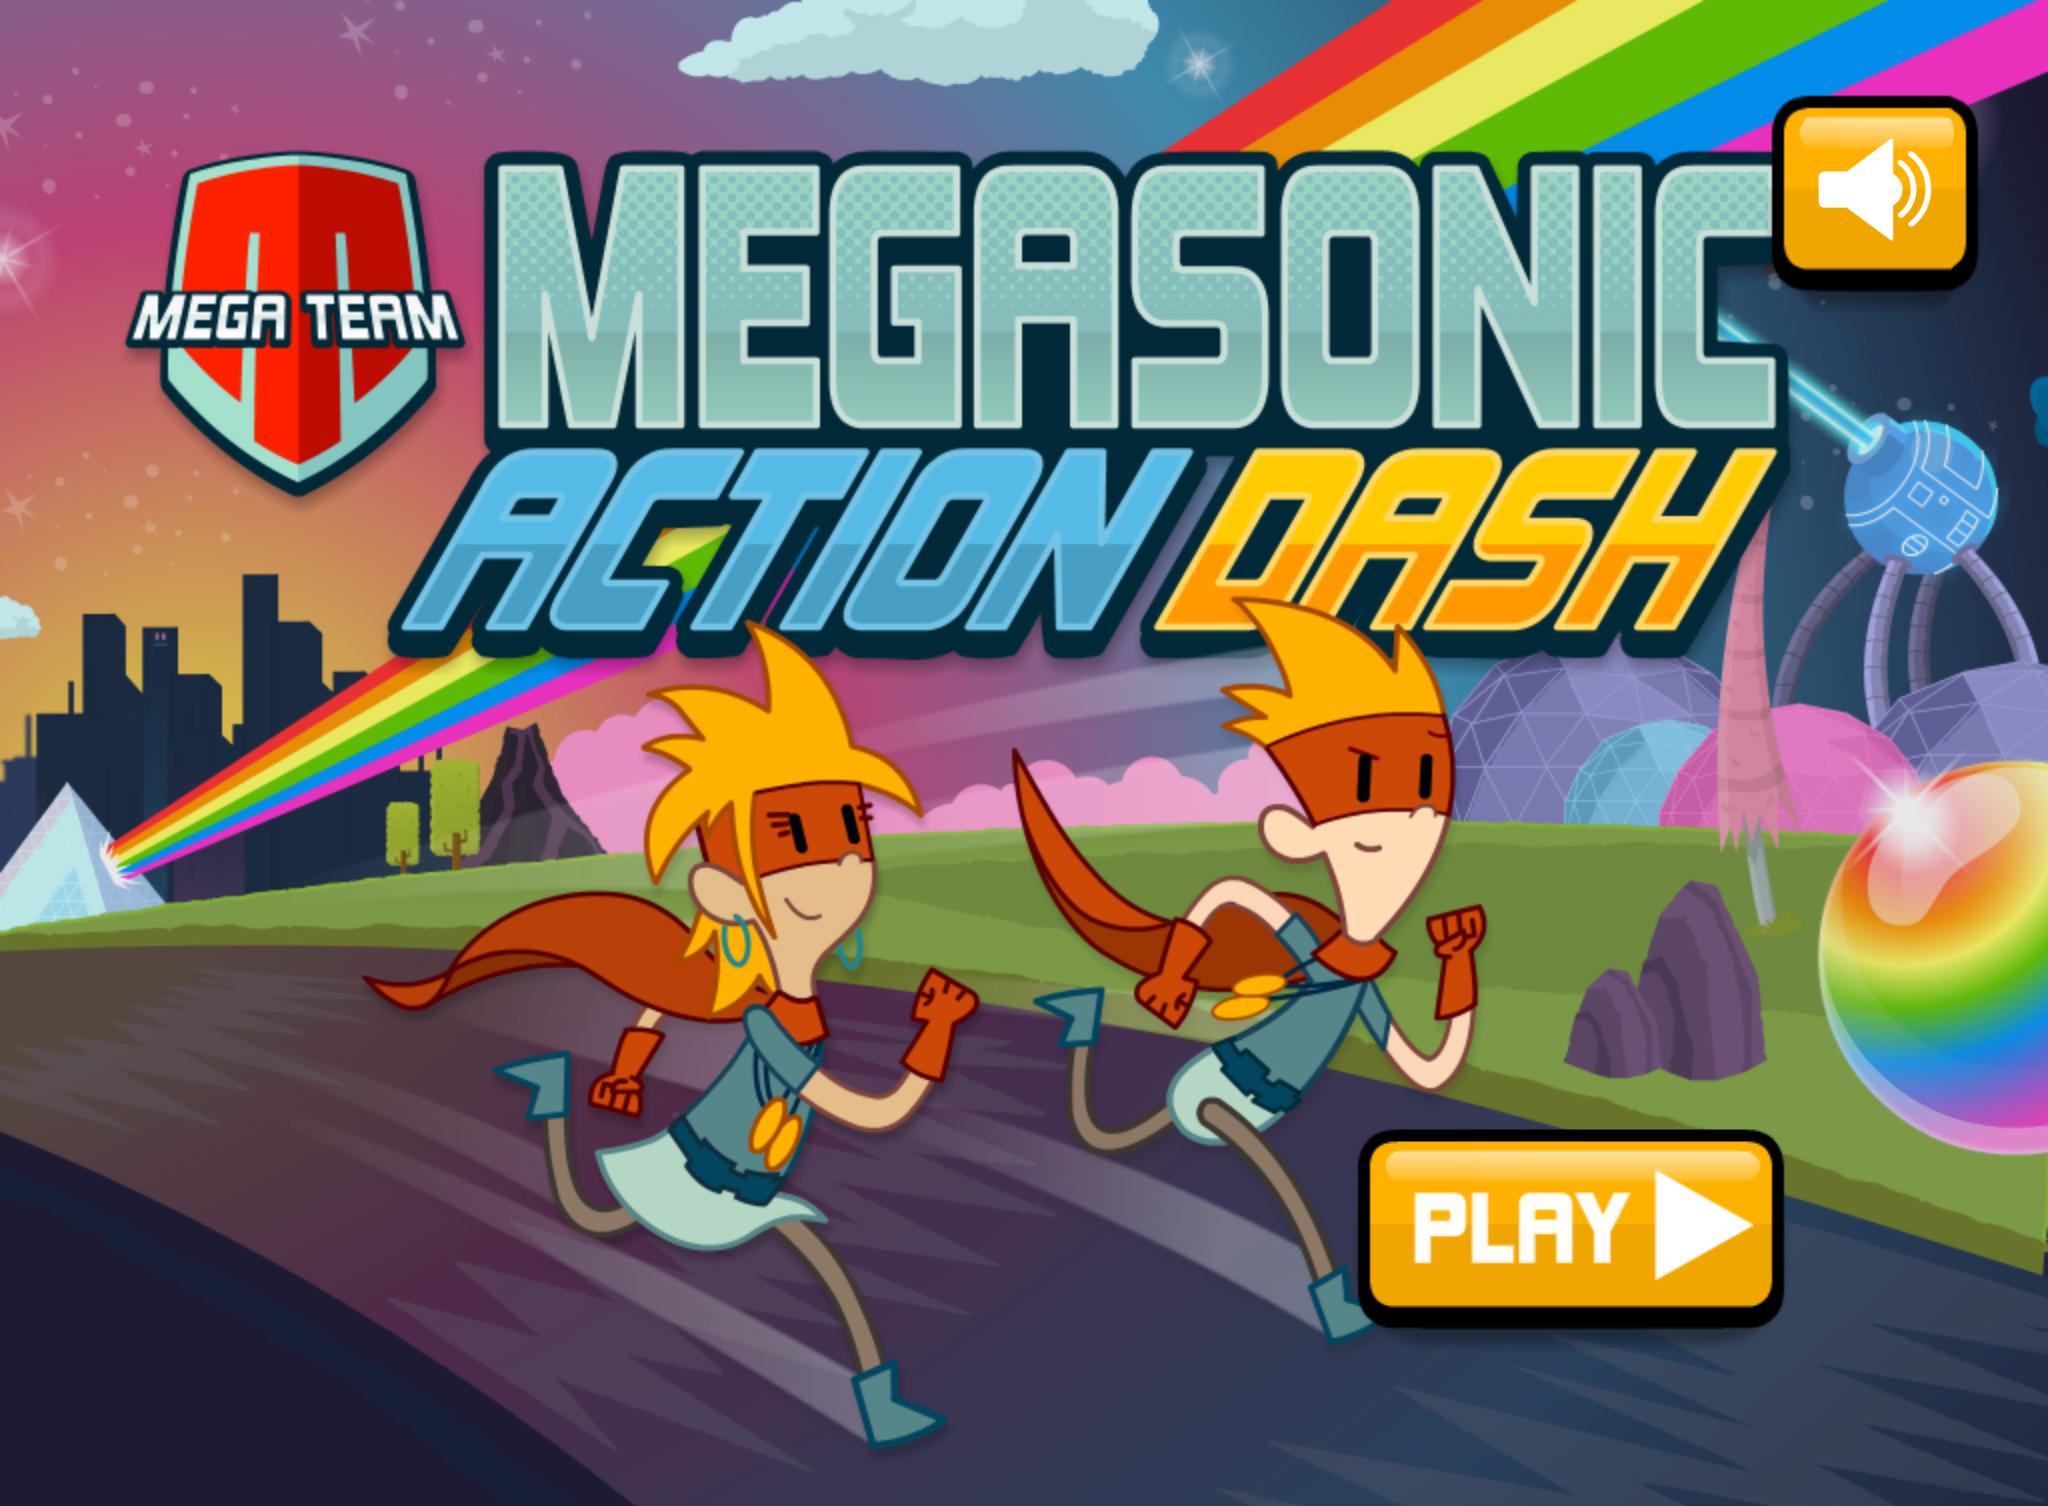 Everything dash. Action Dash приложение. Megasonic. Learn Dash Скриншоты. Бесплатную игру 3 Дэш 1.1.